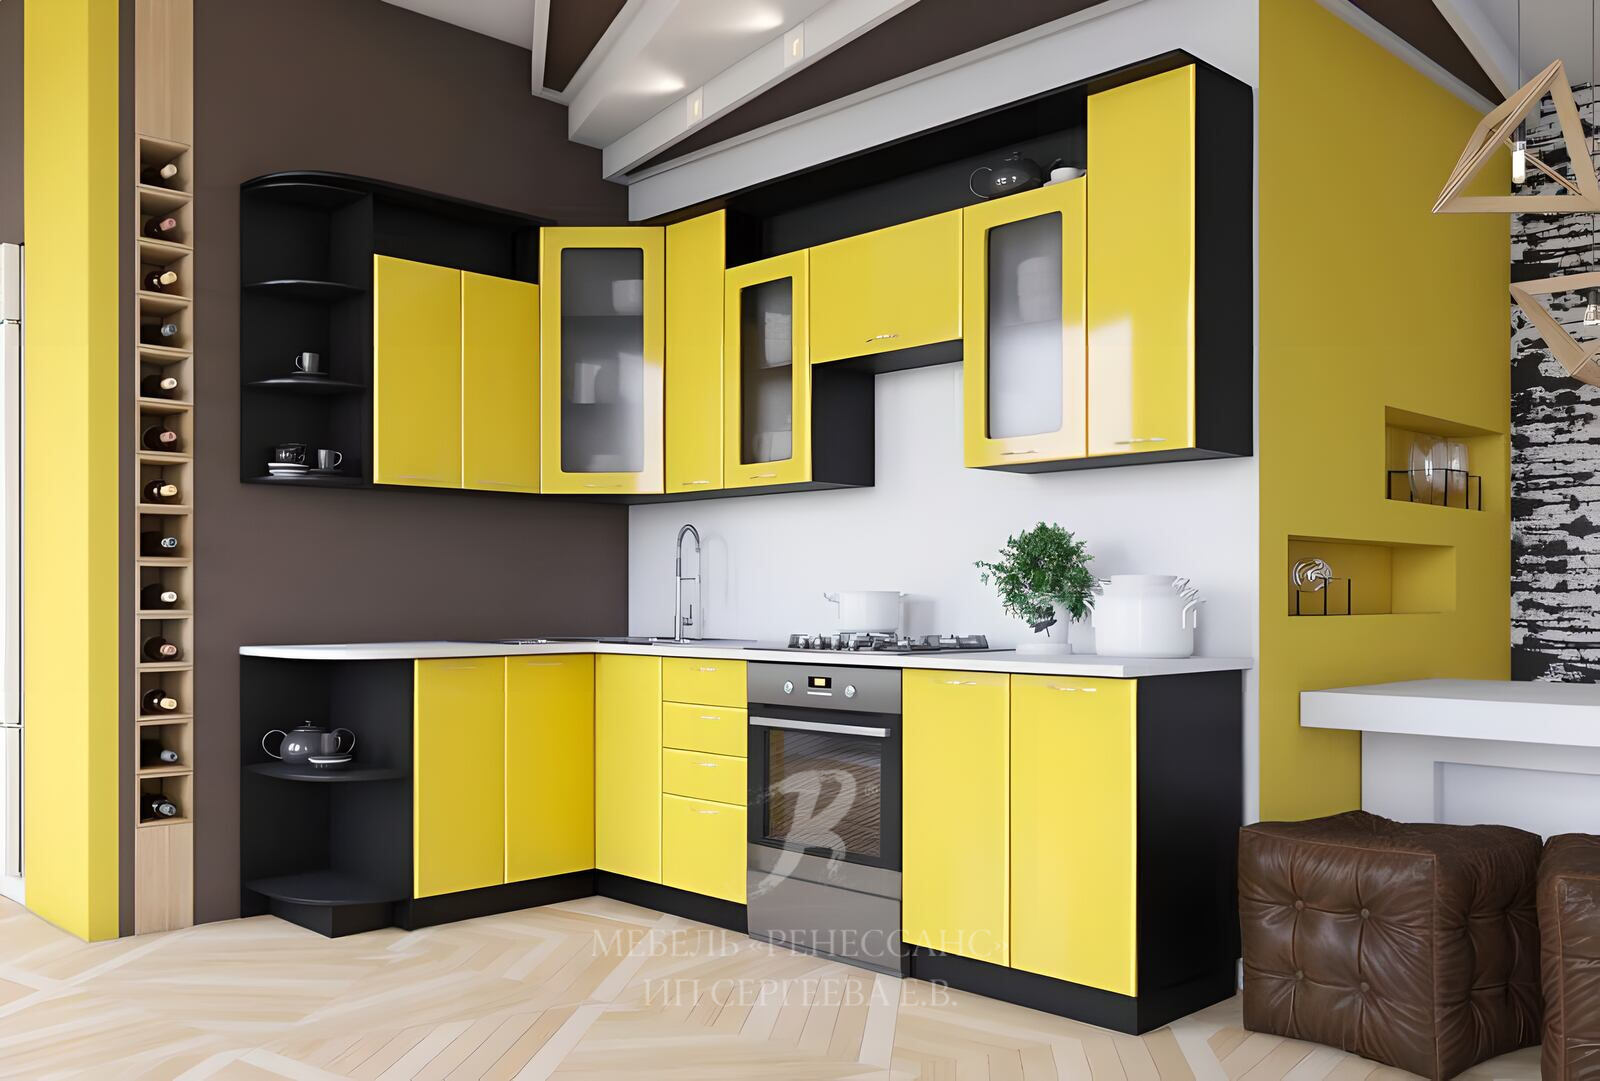 8 mebel ru. Кухонный гарнитур. Желтый кухонный гарнитур. Желтая угловая кухня. Кухонная мебель угловая.